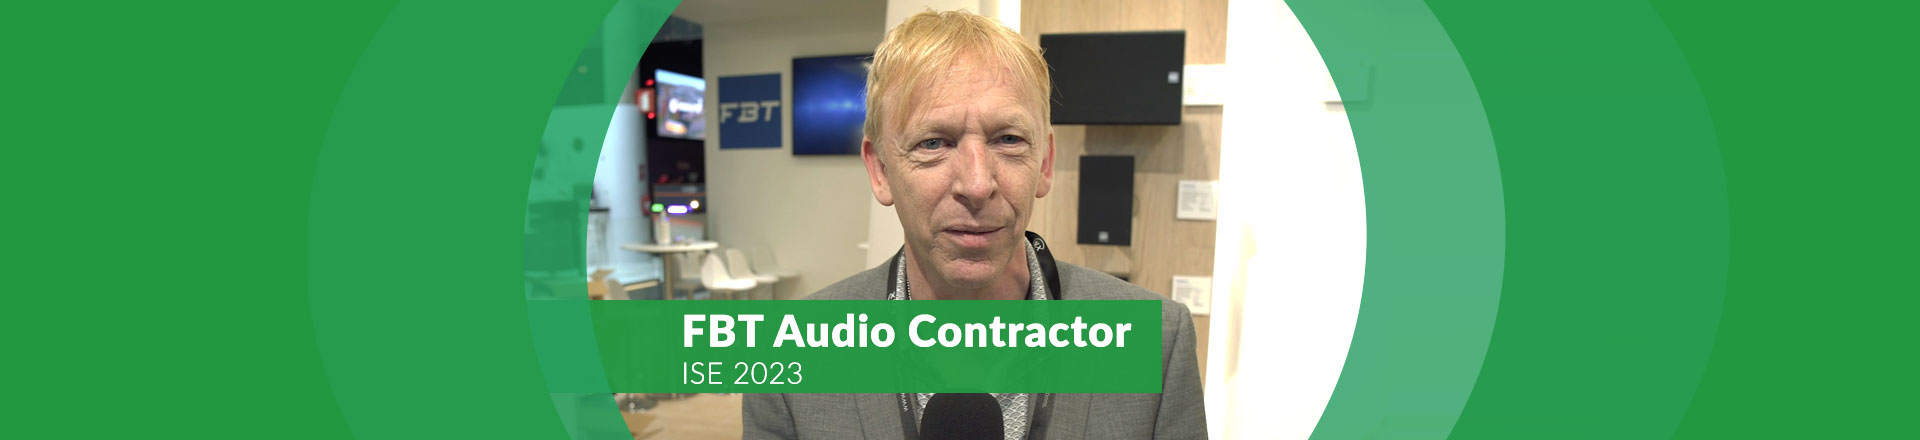 FBT Audio Contractor: kompleksowe nagłośnienie instalacyjne [ISE 2023]